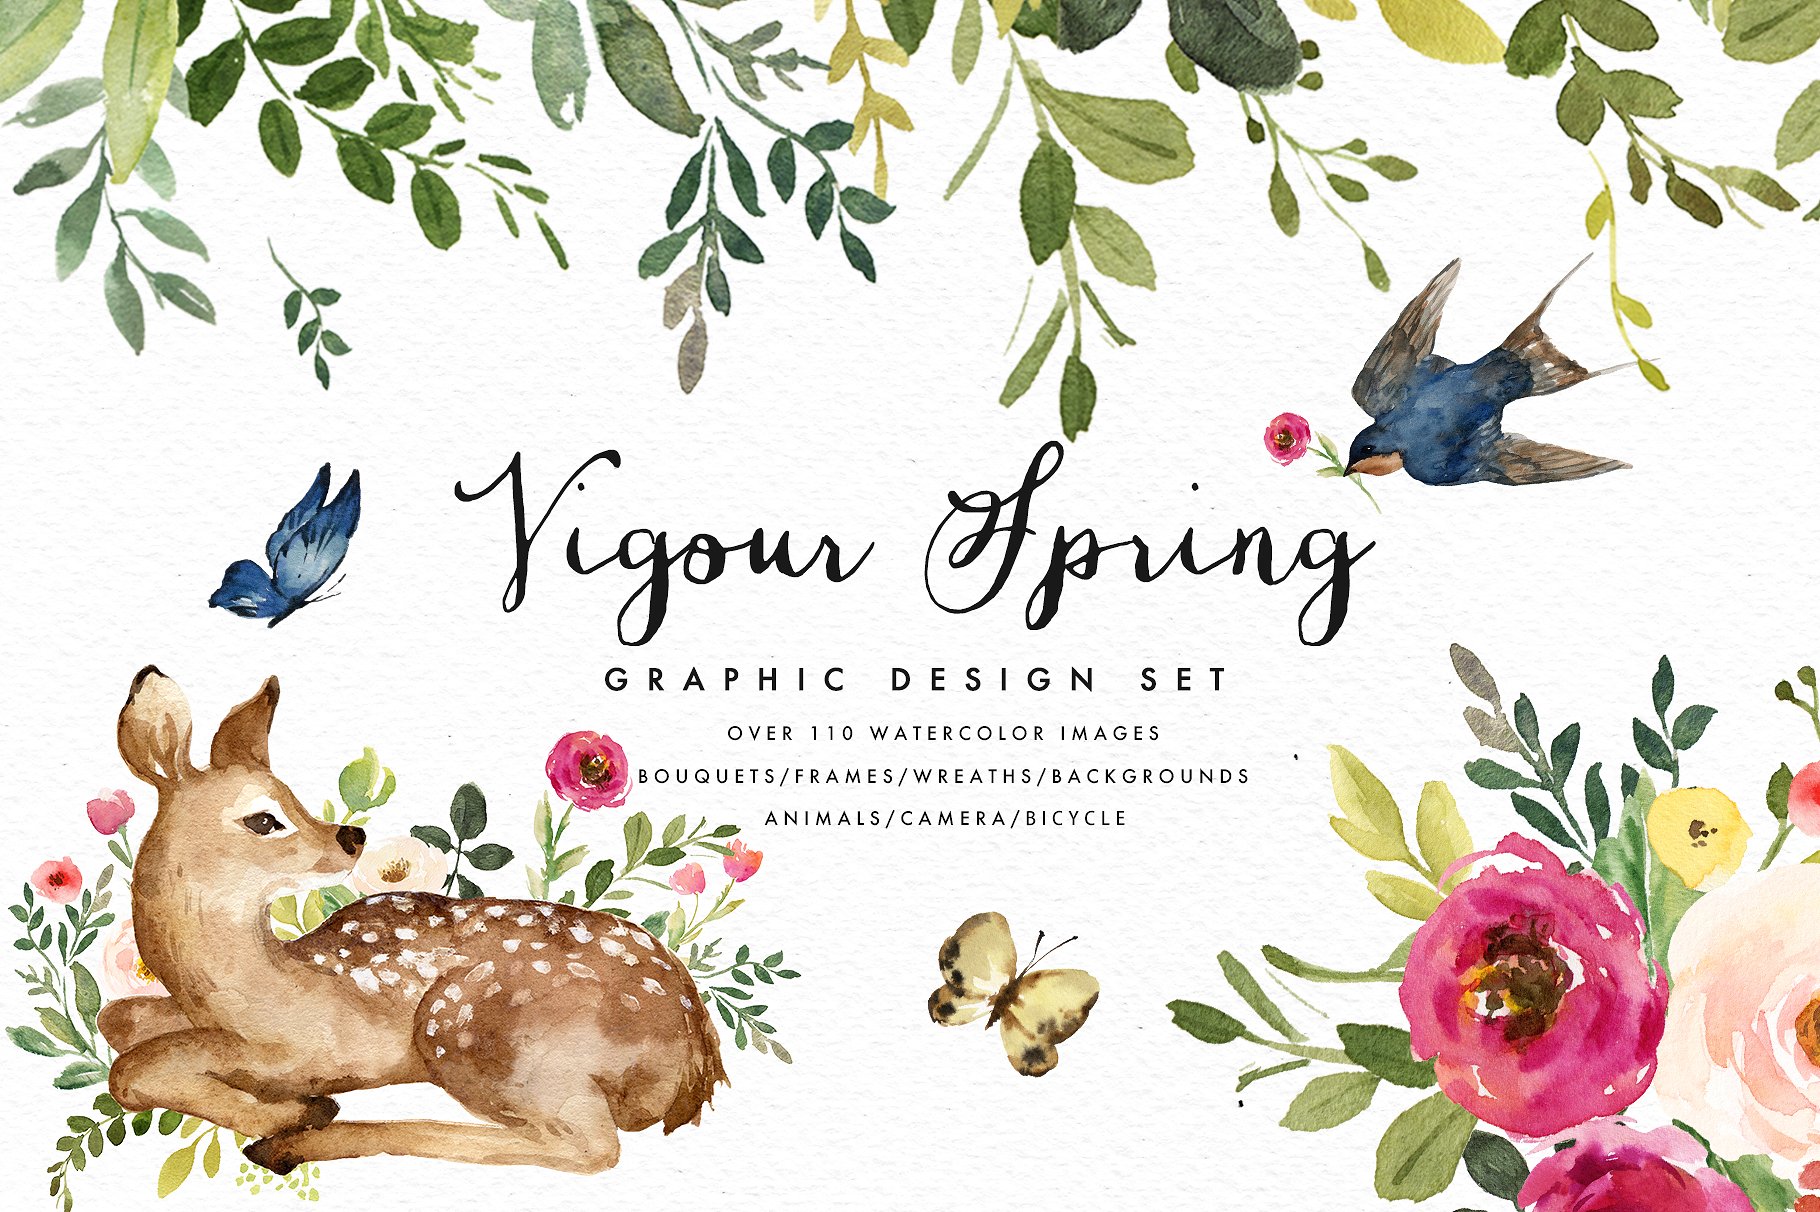 蓬勃活力的春天水彩插画集合 Vigorous Spring Graphic Design Set插图